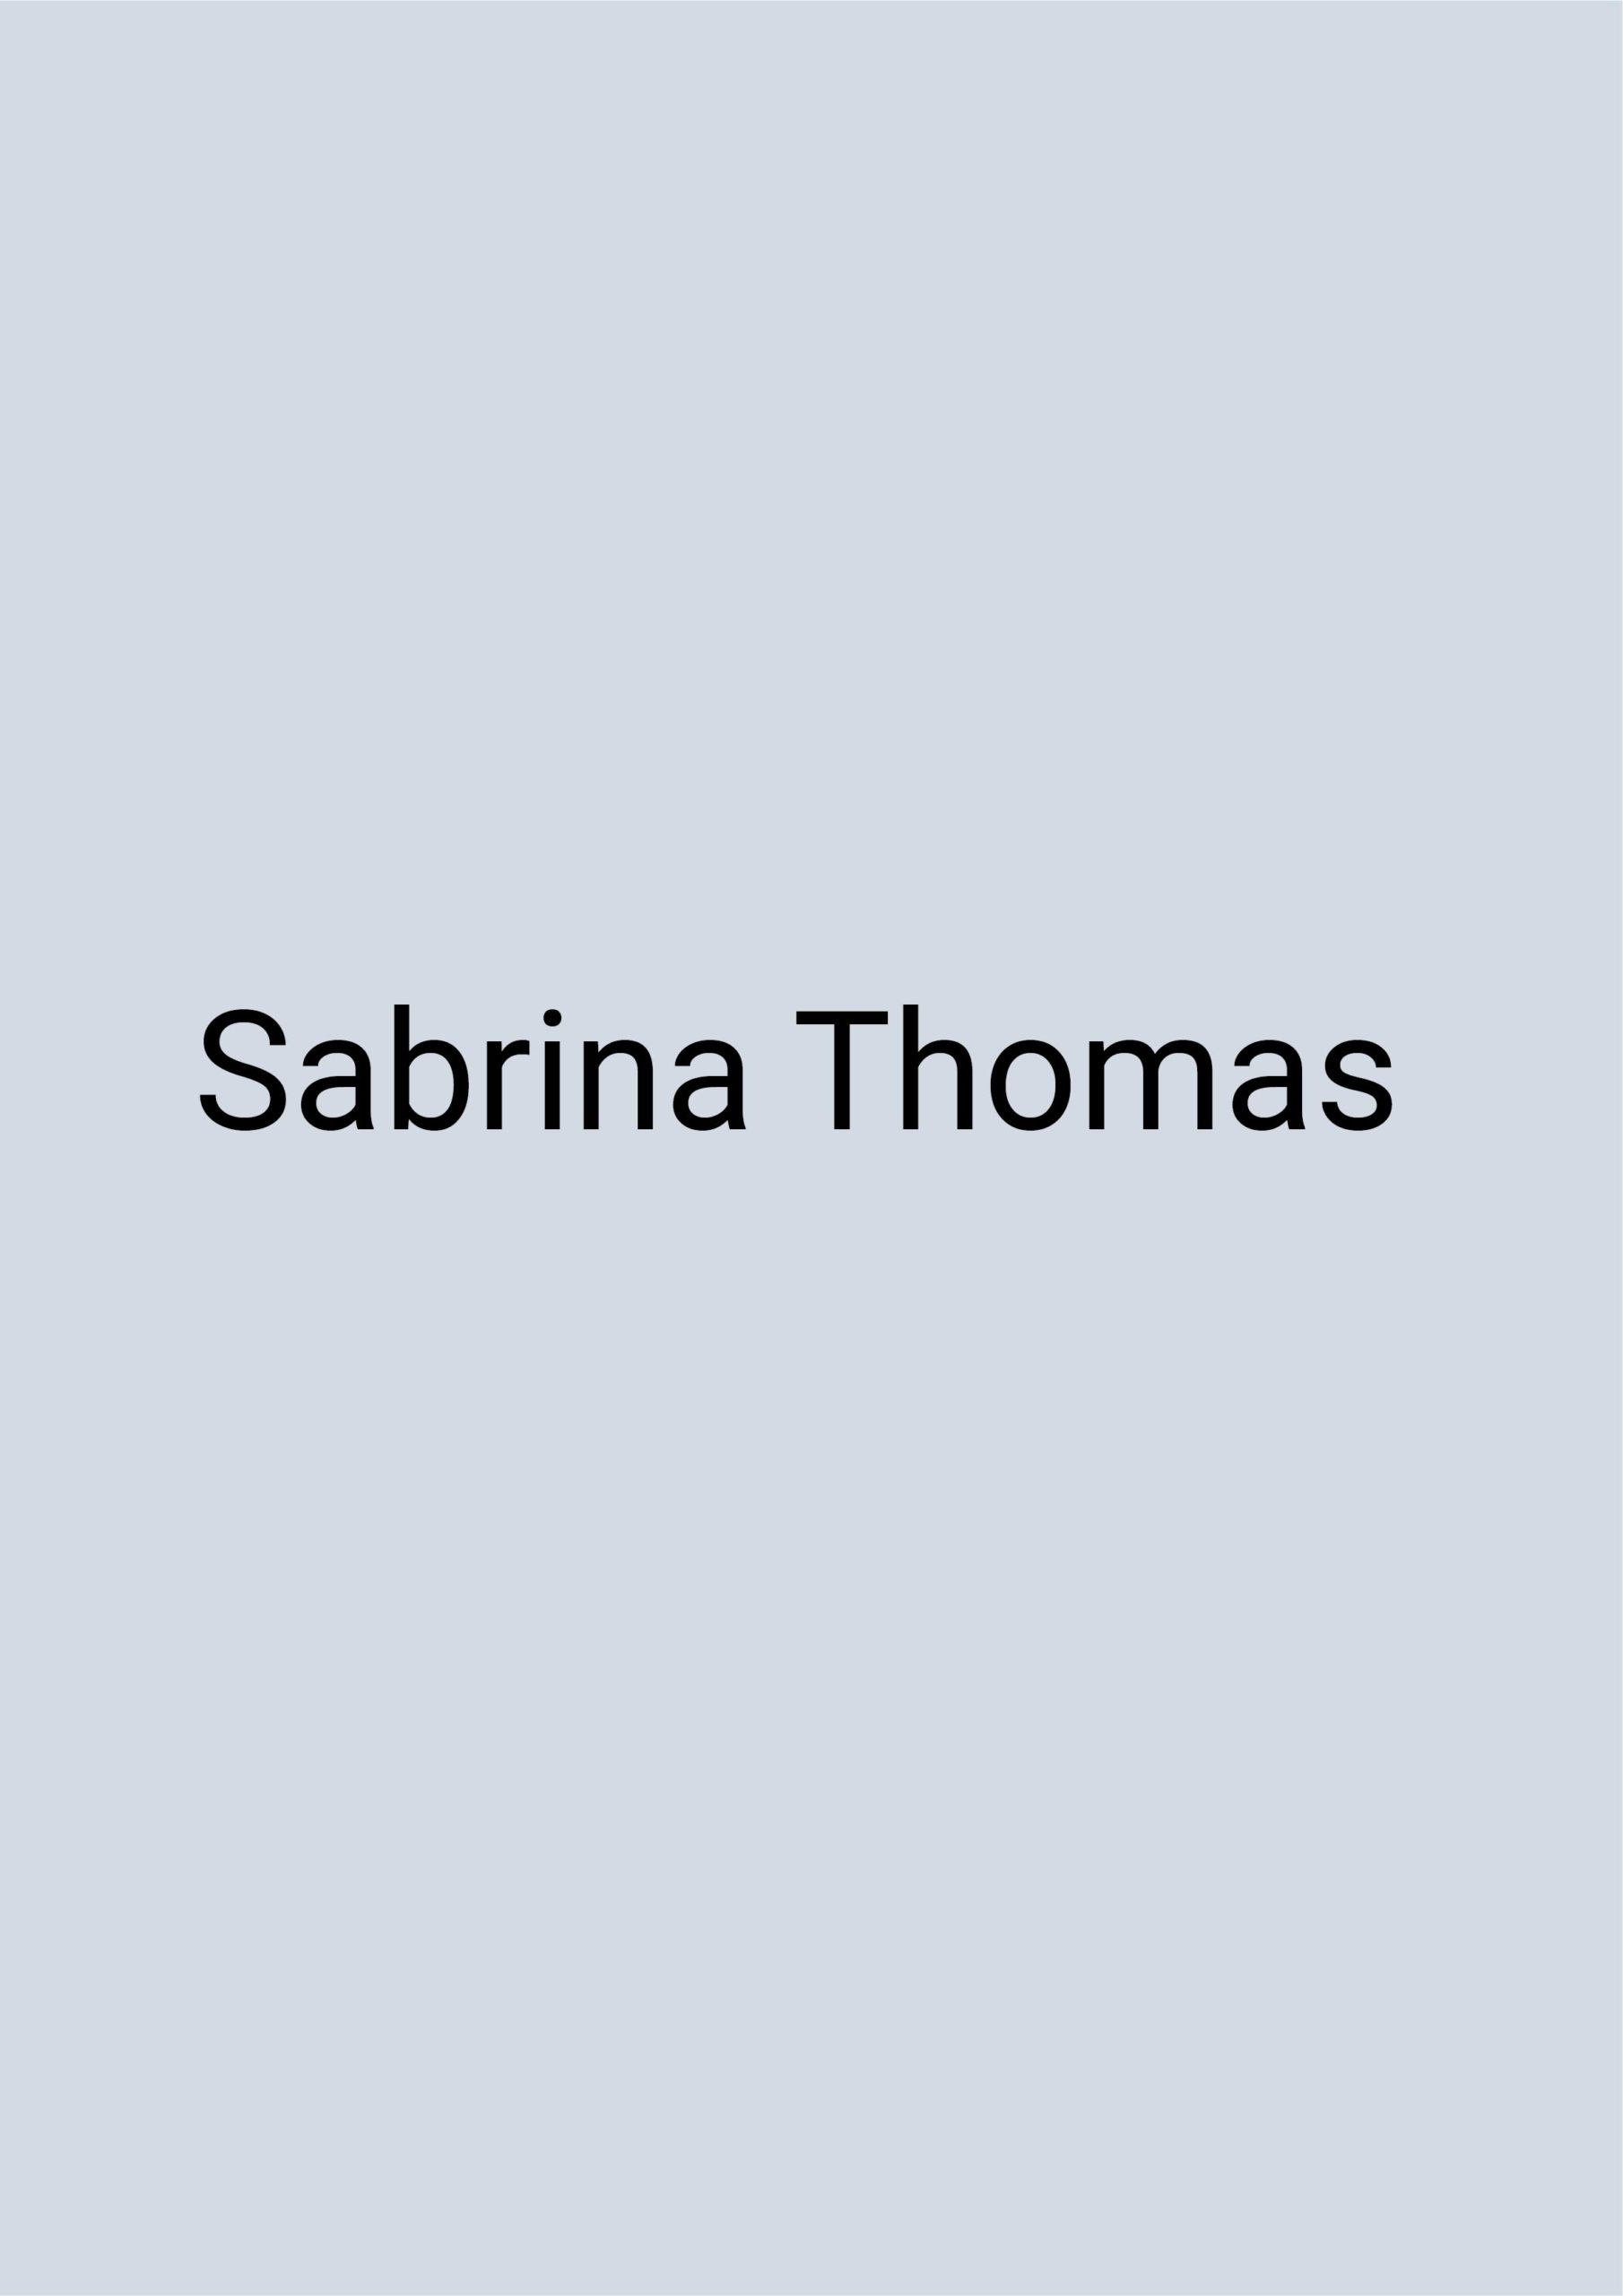 Grafik: blauer Hintergrund, auf dem in schwarzer Schrift „Sabrina Thomas" geschrieben steht.